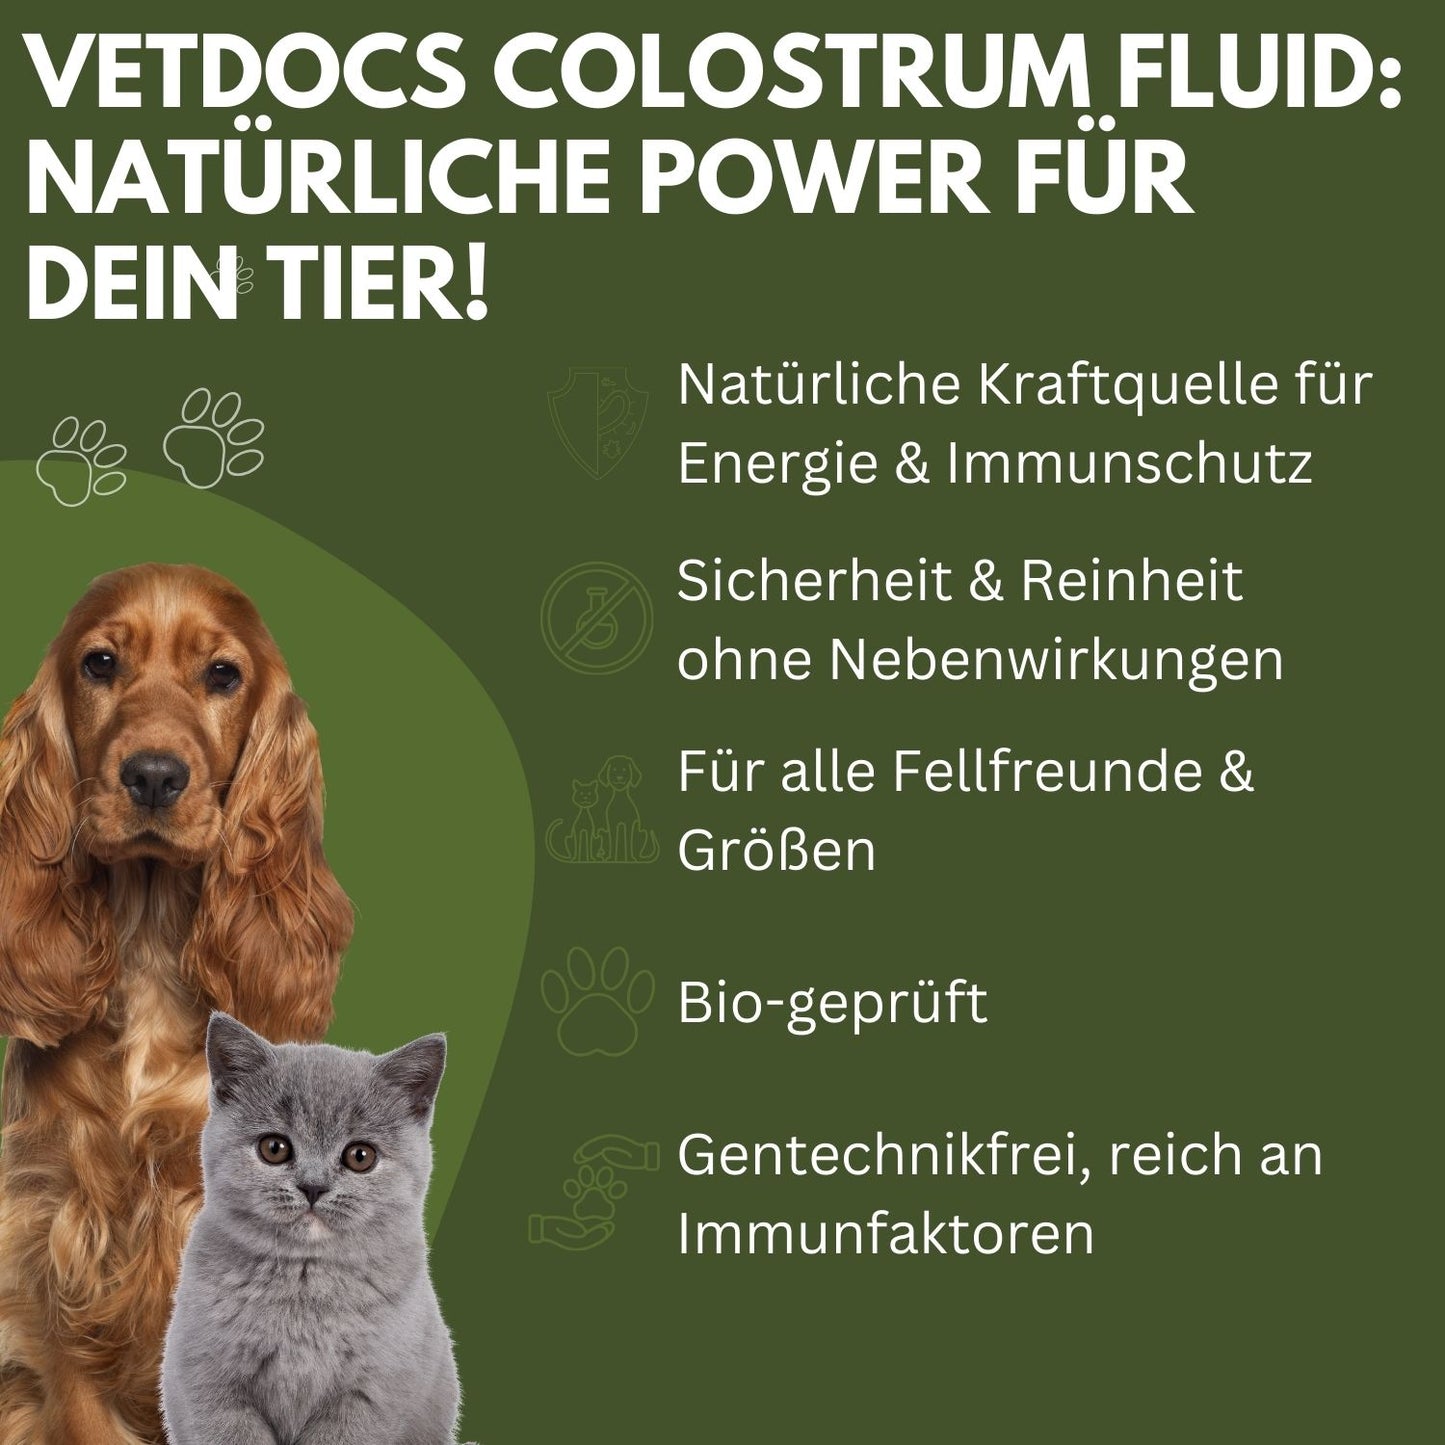 vetDocs Colostrum I Colostrum flüssig I Bio colostrum I Das Premium-Nahrungsergänzungsmittel für Hunde und Katzen